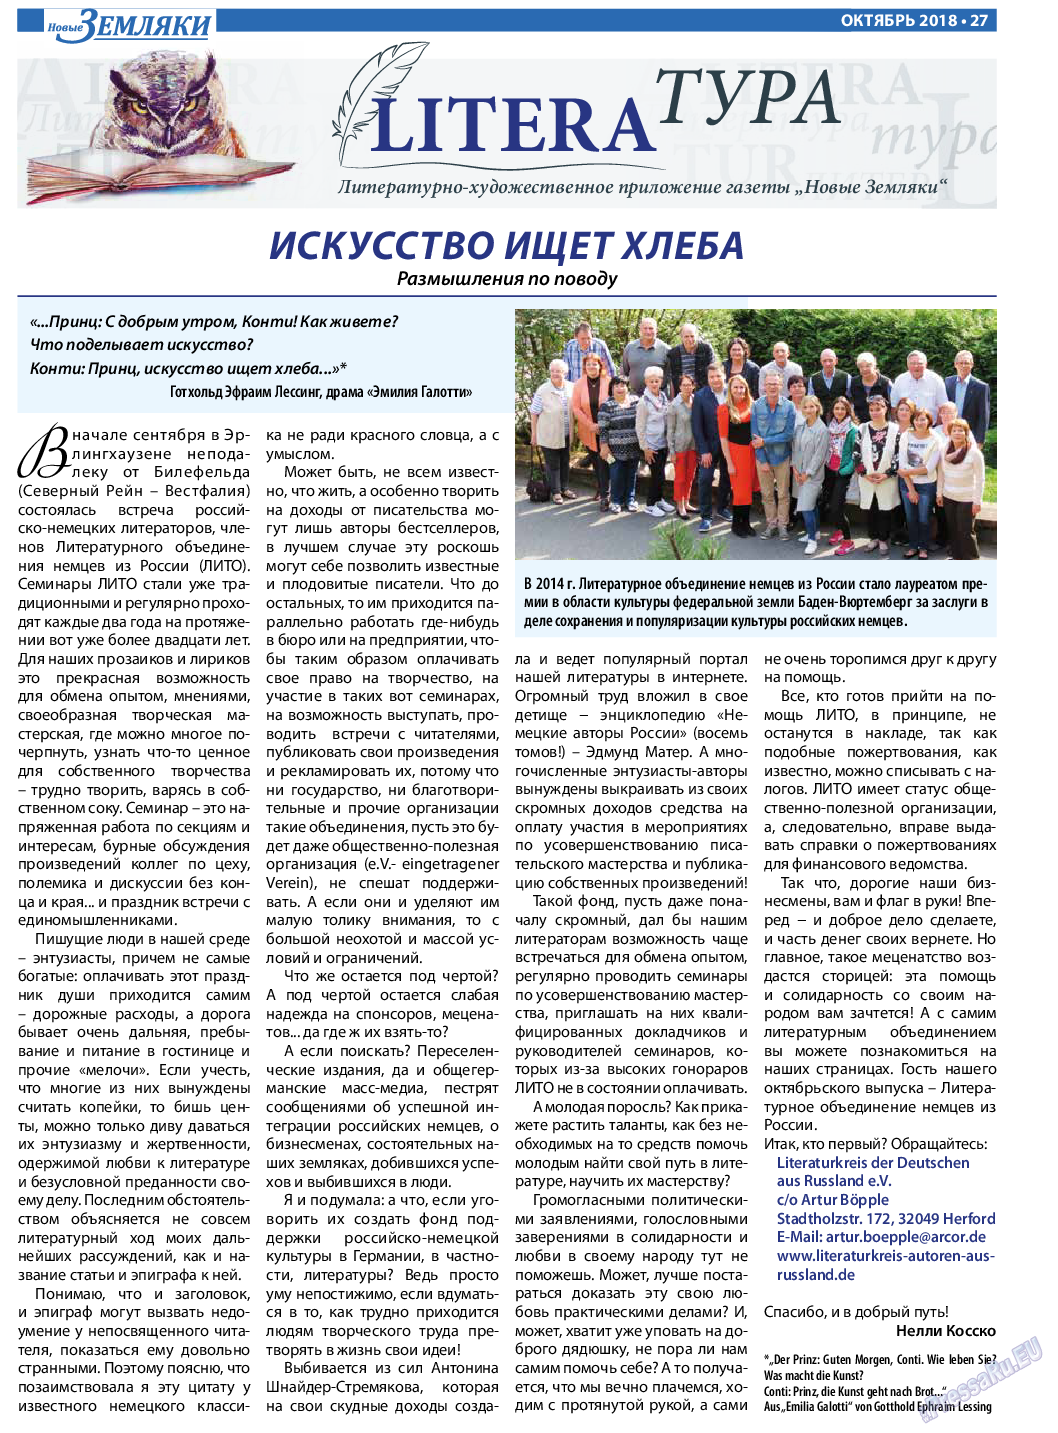 Новые Земляки (газета). 2018 год, номер 10, стр. 27